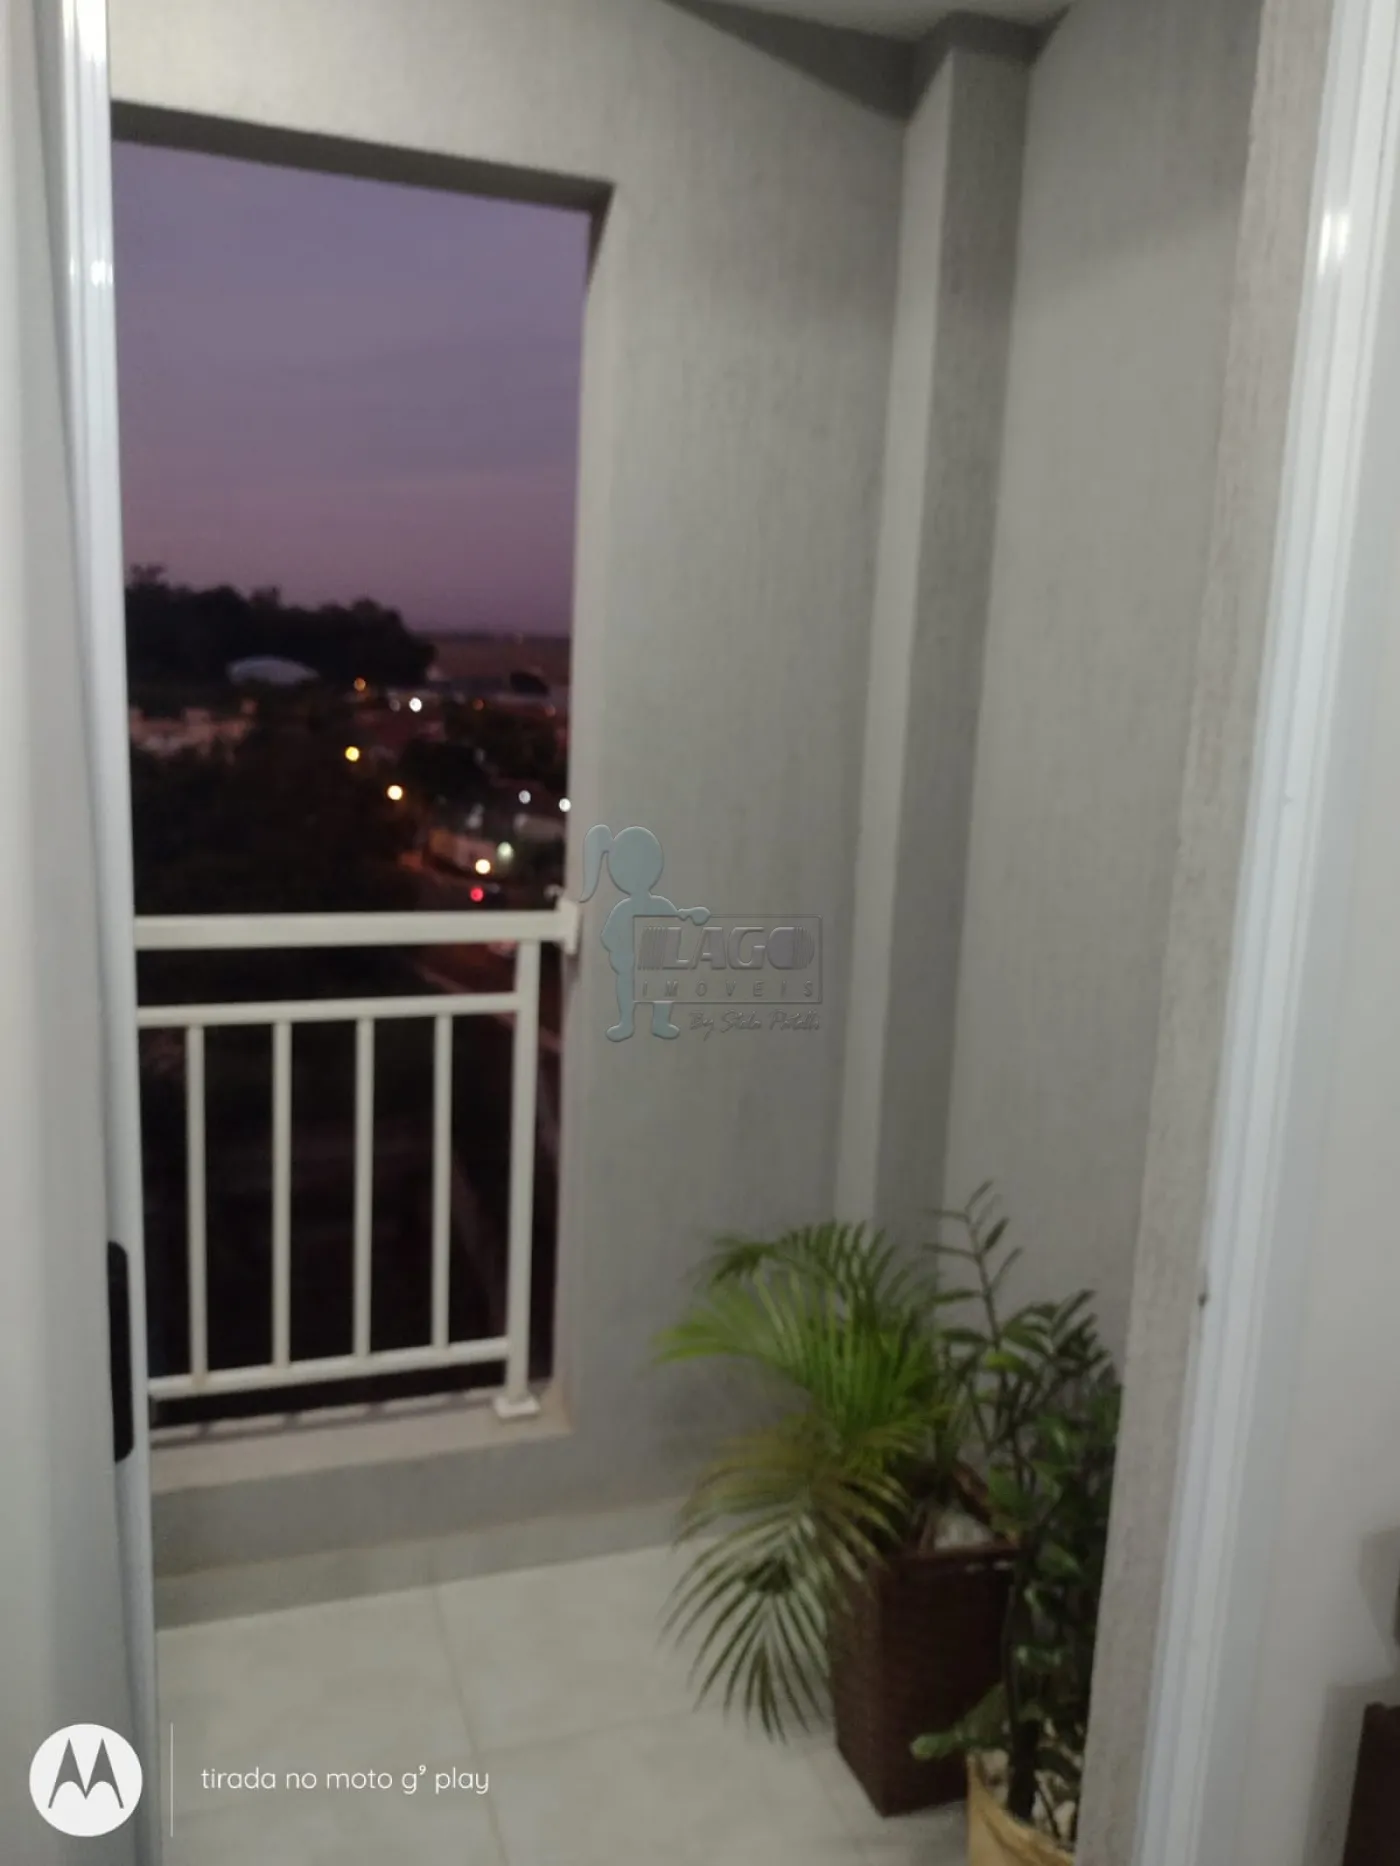 Alugar Apartamentos / Padrão em Ribeirão Preto R$ 1.200,00 - Foto 18